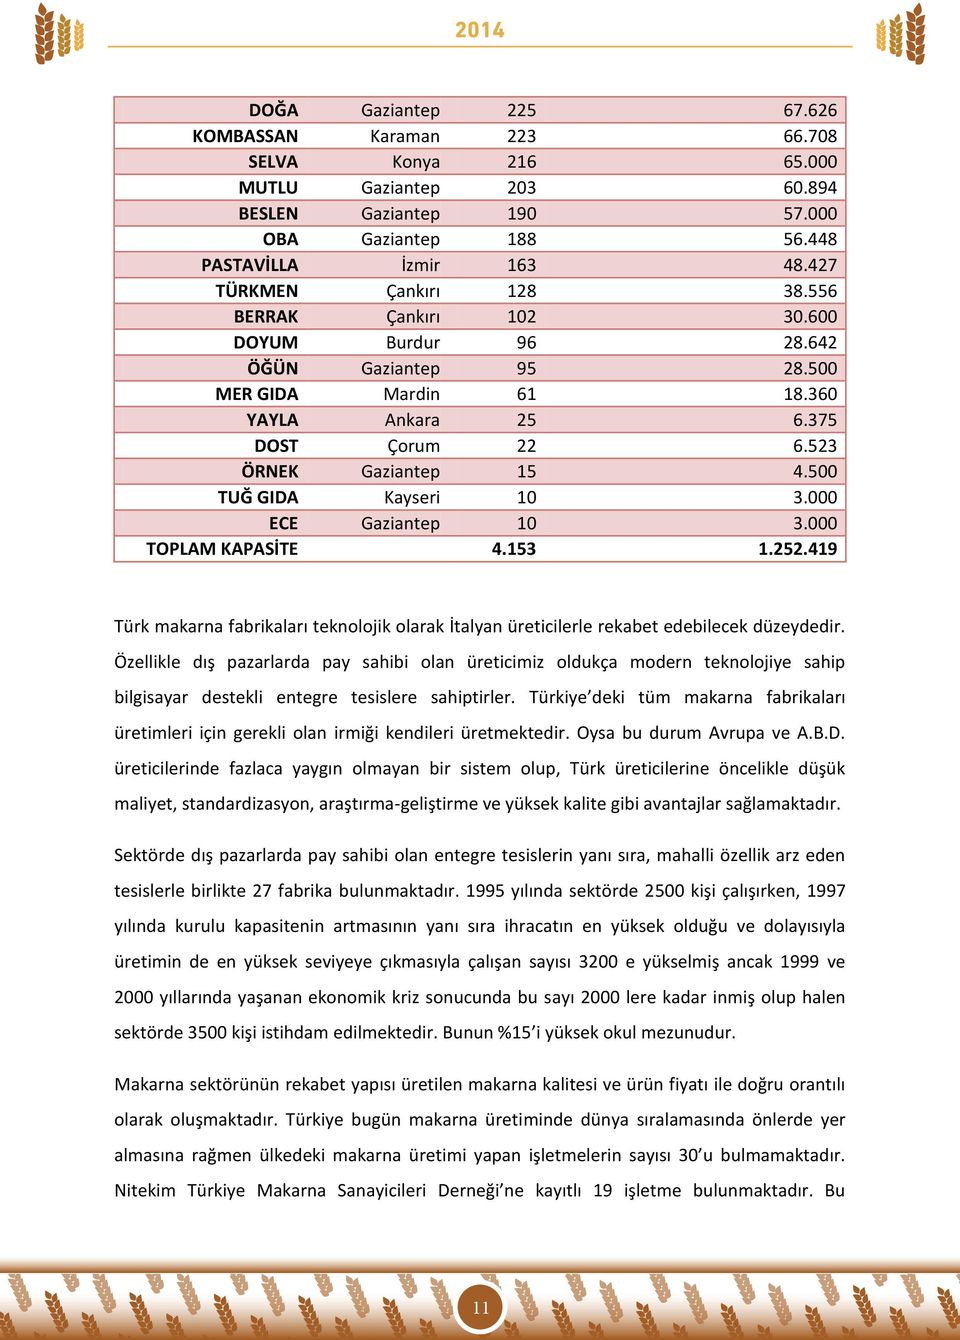 500 TUĞ GIDA Kayseri 10 3.000 ECE Gaziantep 10 3.000 TOPLAM KAPASİTE 4.153 1.252.419 Türk makarna fabrikaları teknolojik olarak İtalyan üreticilerle rekabet edebilecek düzeydedir.